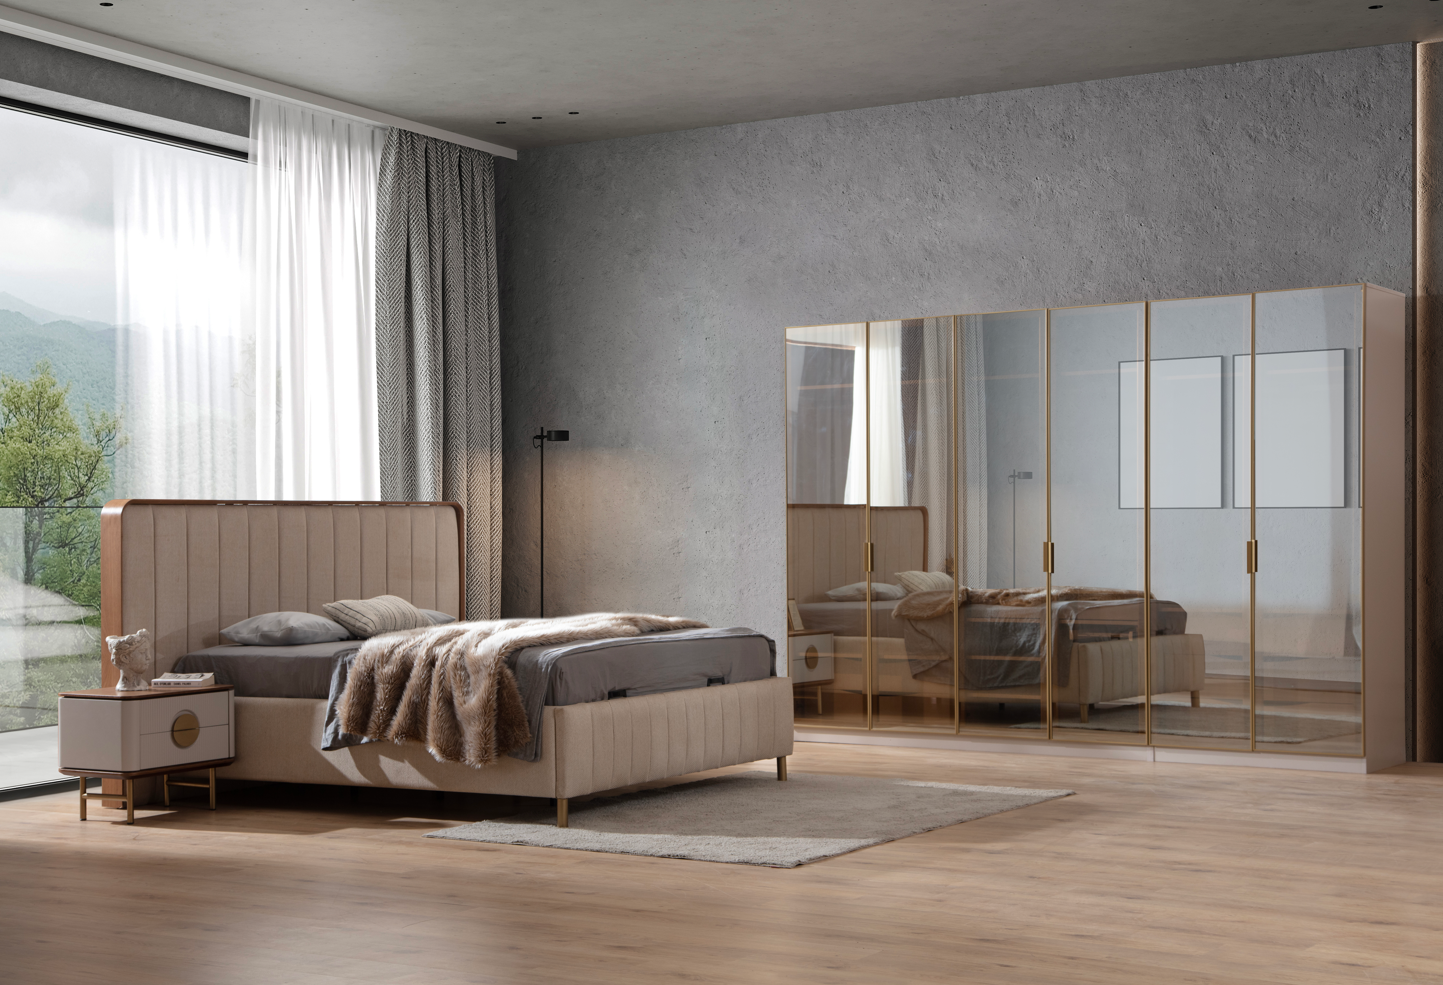 Viola Sovrumsset - LINE Furniture Group